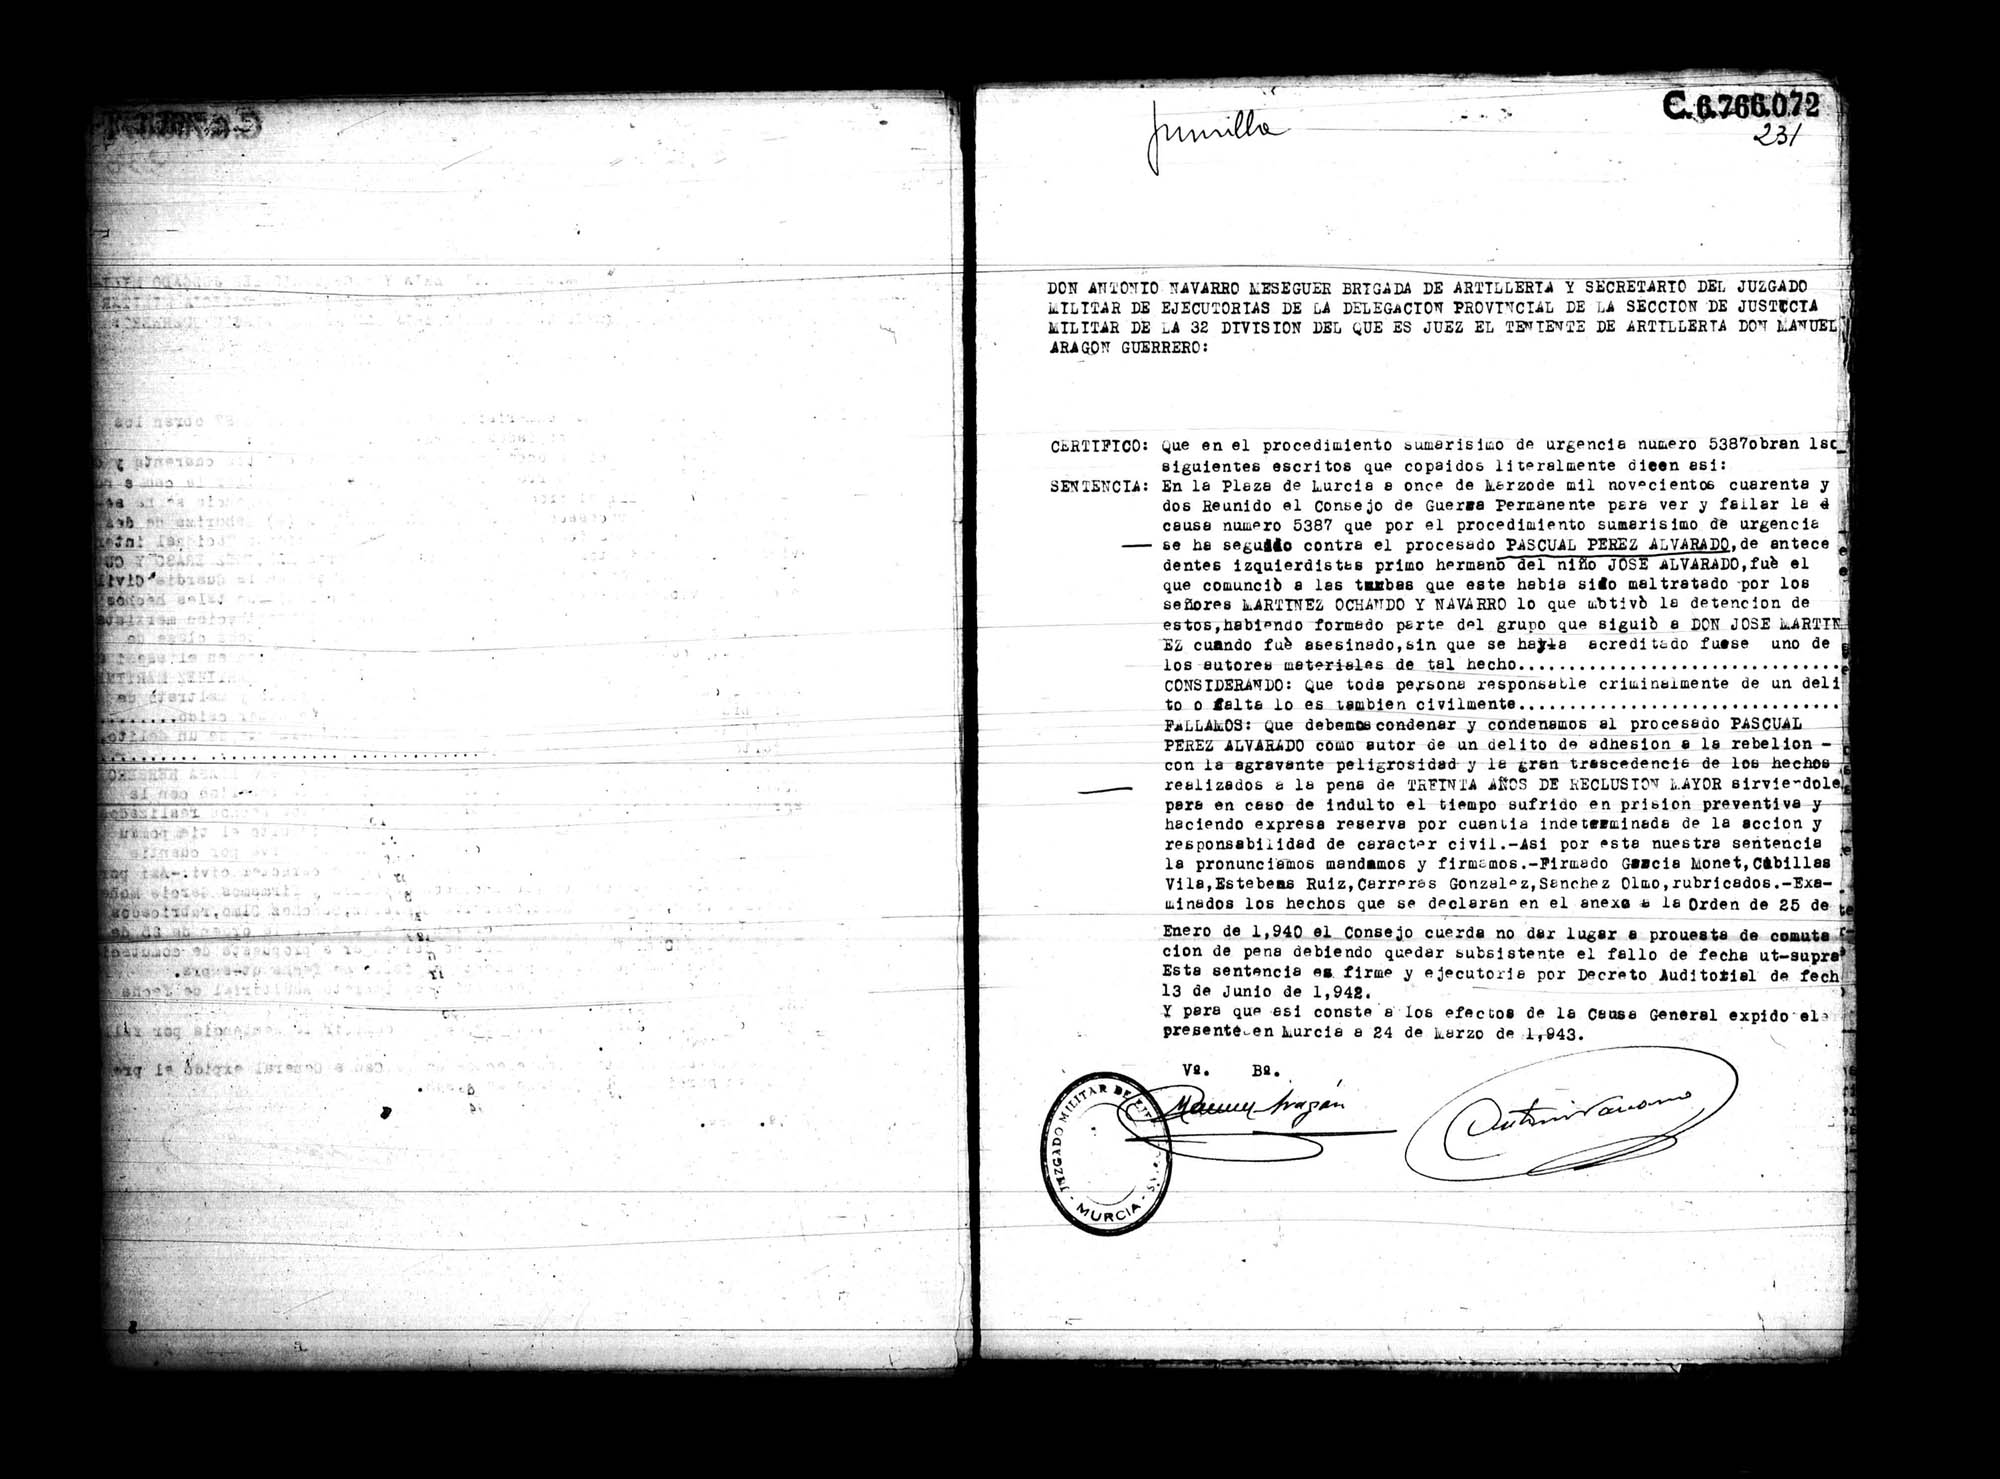 Certificado de la sentencia pronunciada contra Pascual Pérez Alvarado, causa 5387, el 11 de marzo de 1942 en Murcia.